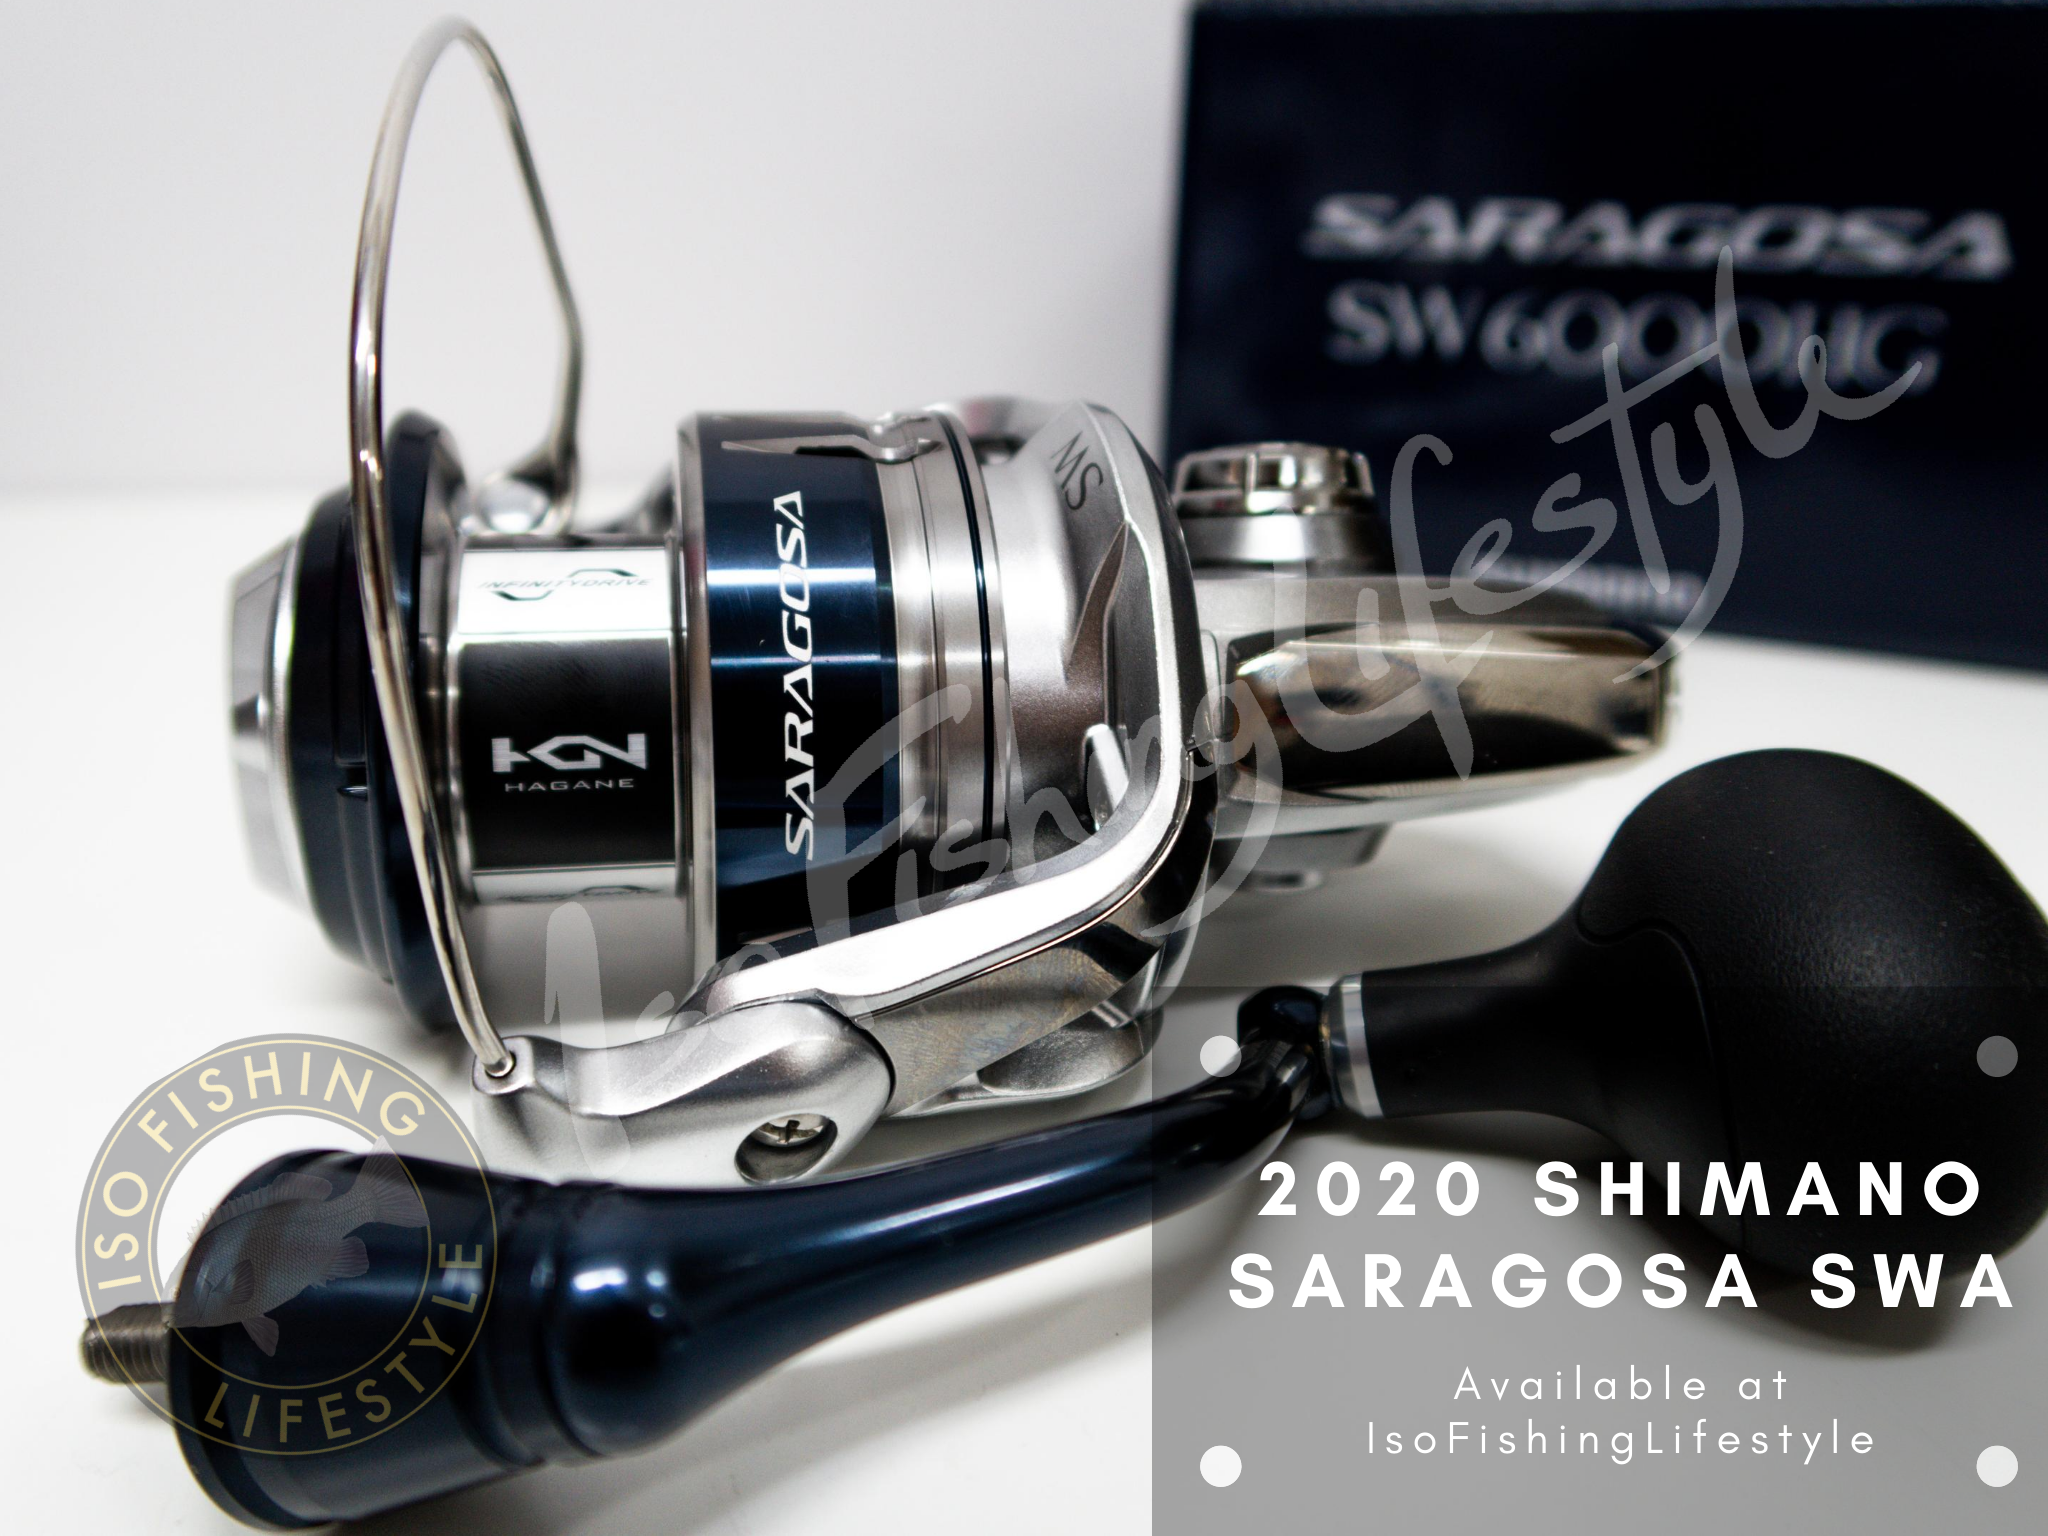 Shimano 20 Saragosa SWA – Isofishinglifestyle